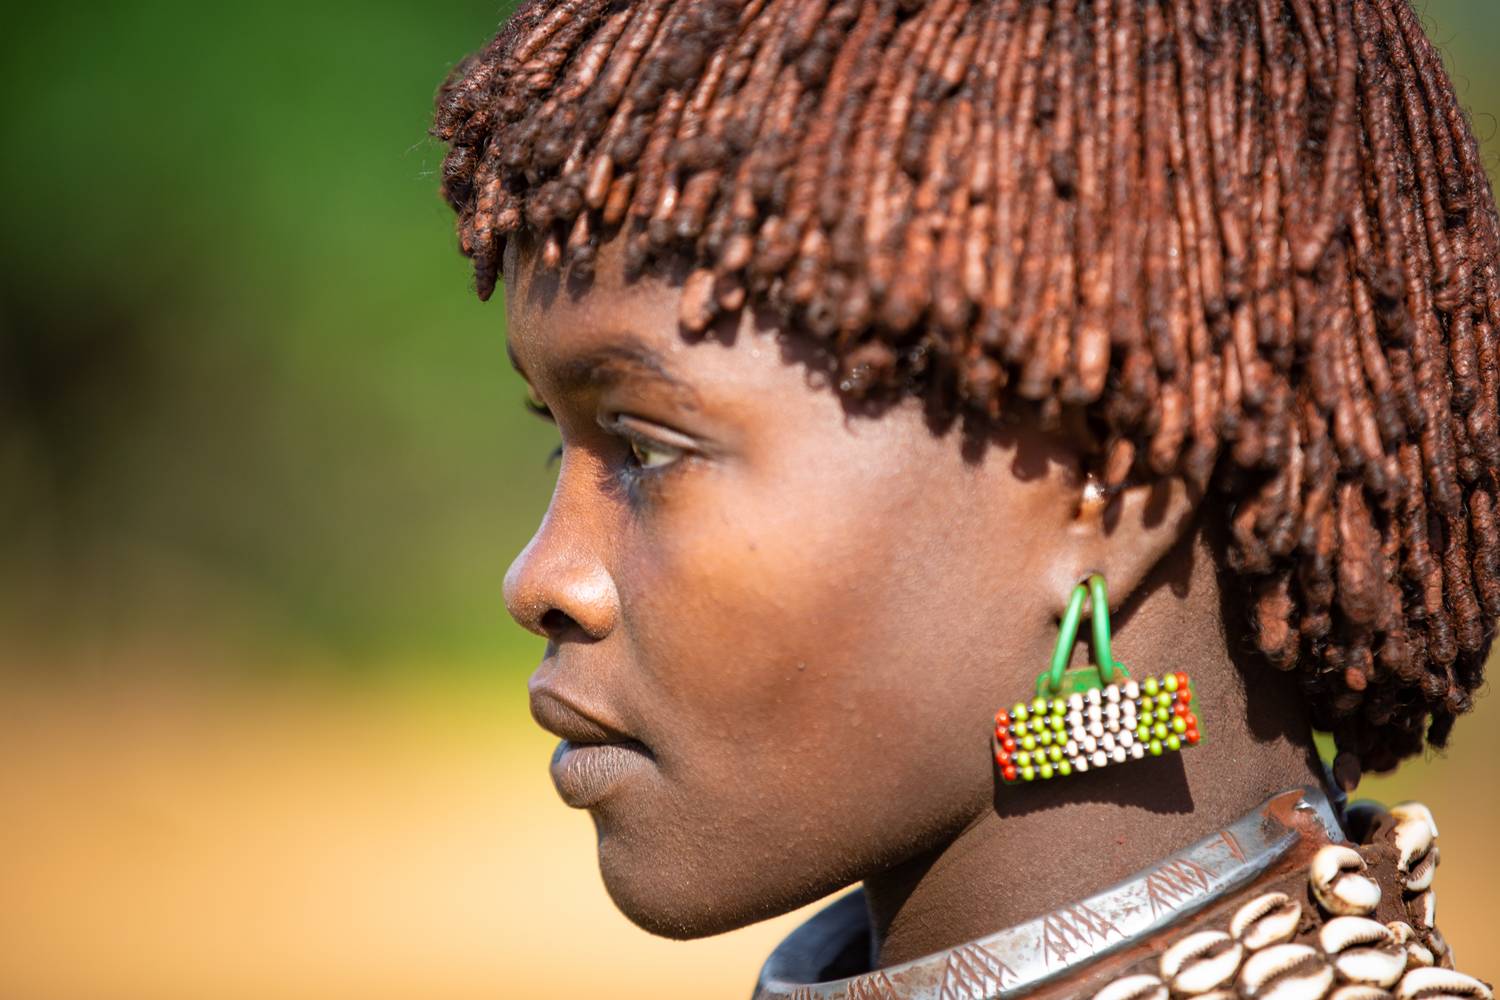 Portrait Äthiopien Afrika Omo Valley Hamer Stamm od Miro May